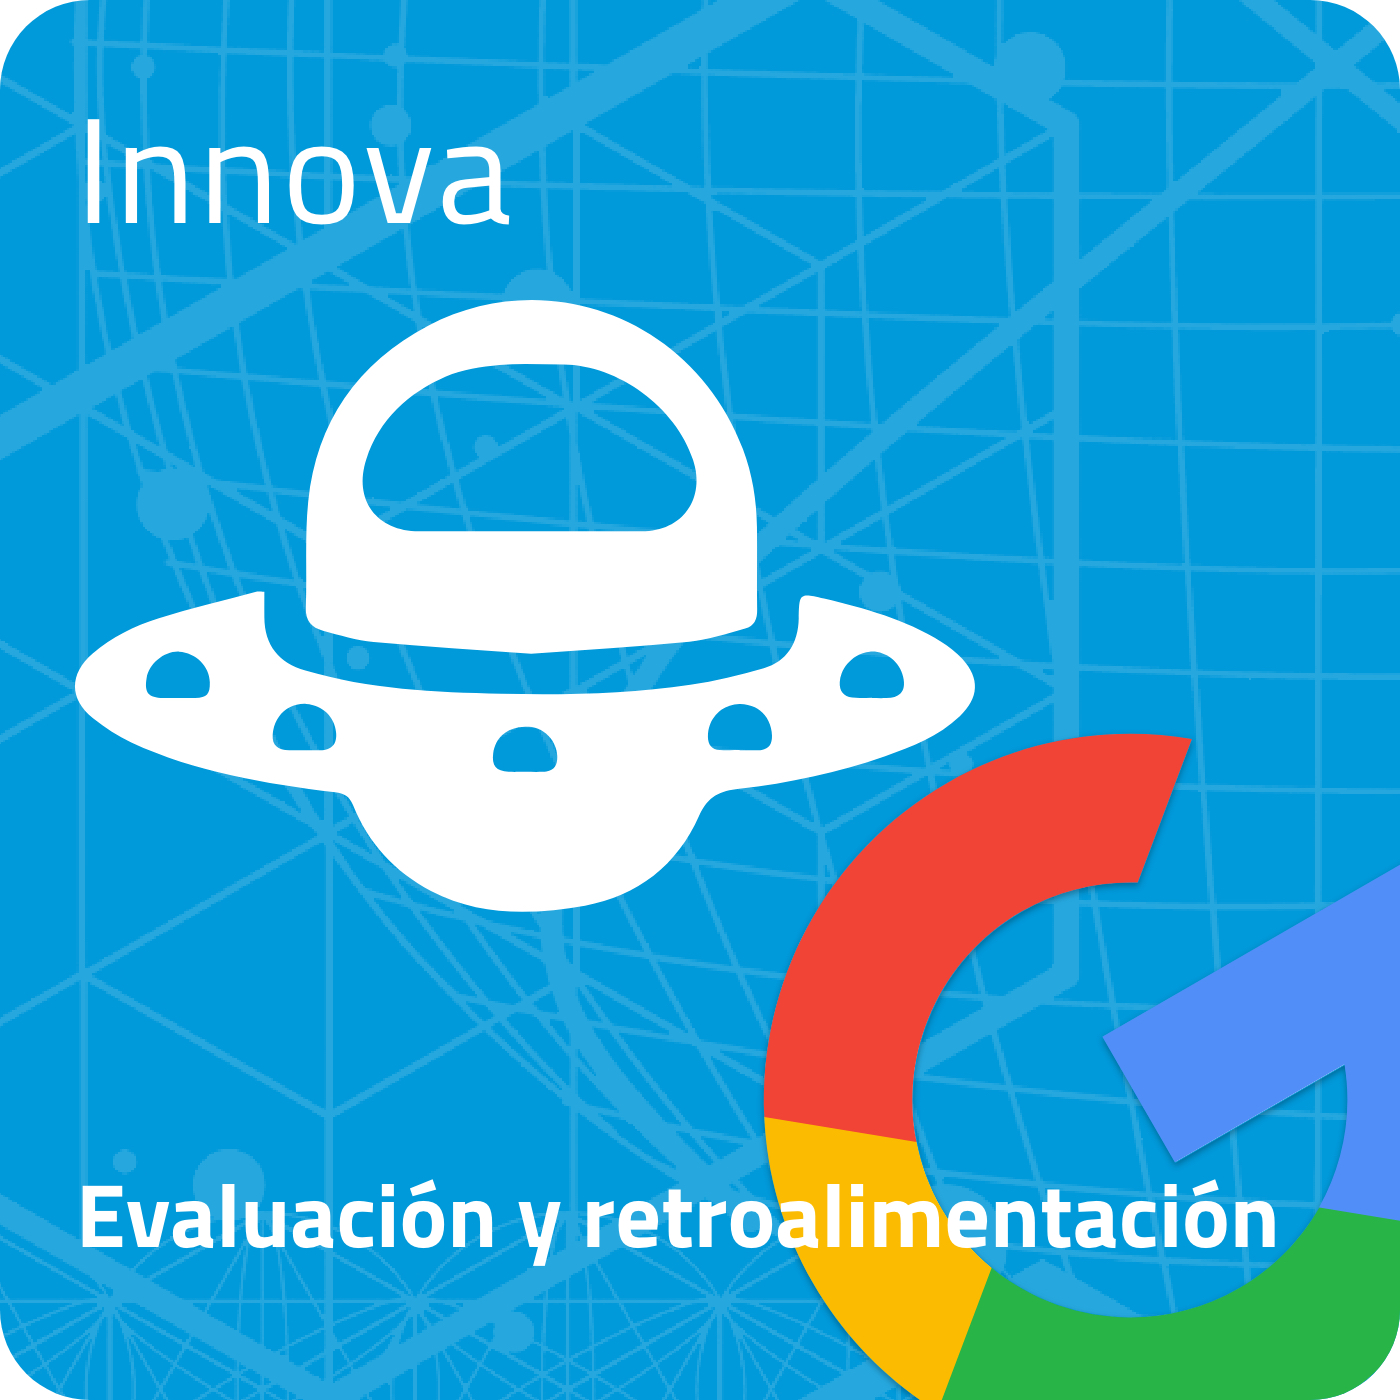 EVALUACIÓN Y RETROALIMENTACIÓN - Innova con Google (I Edición)